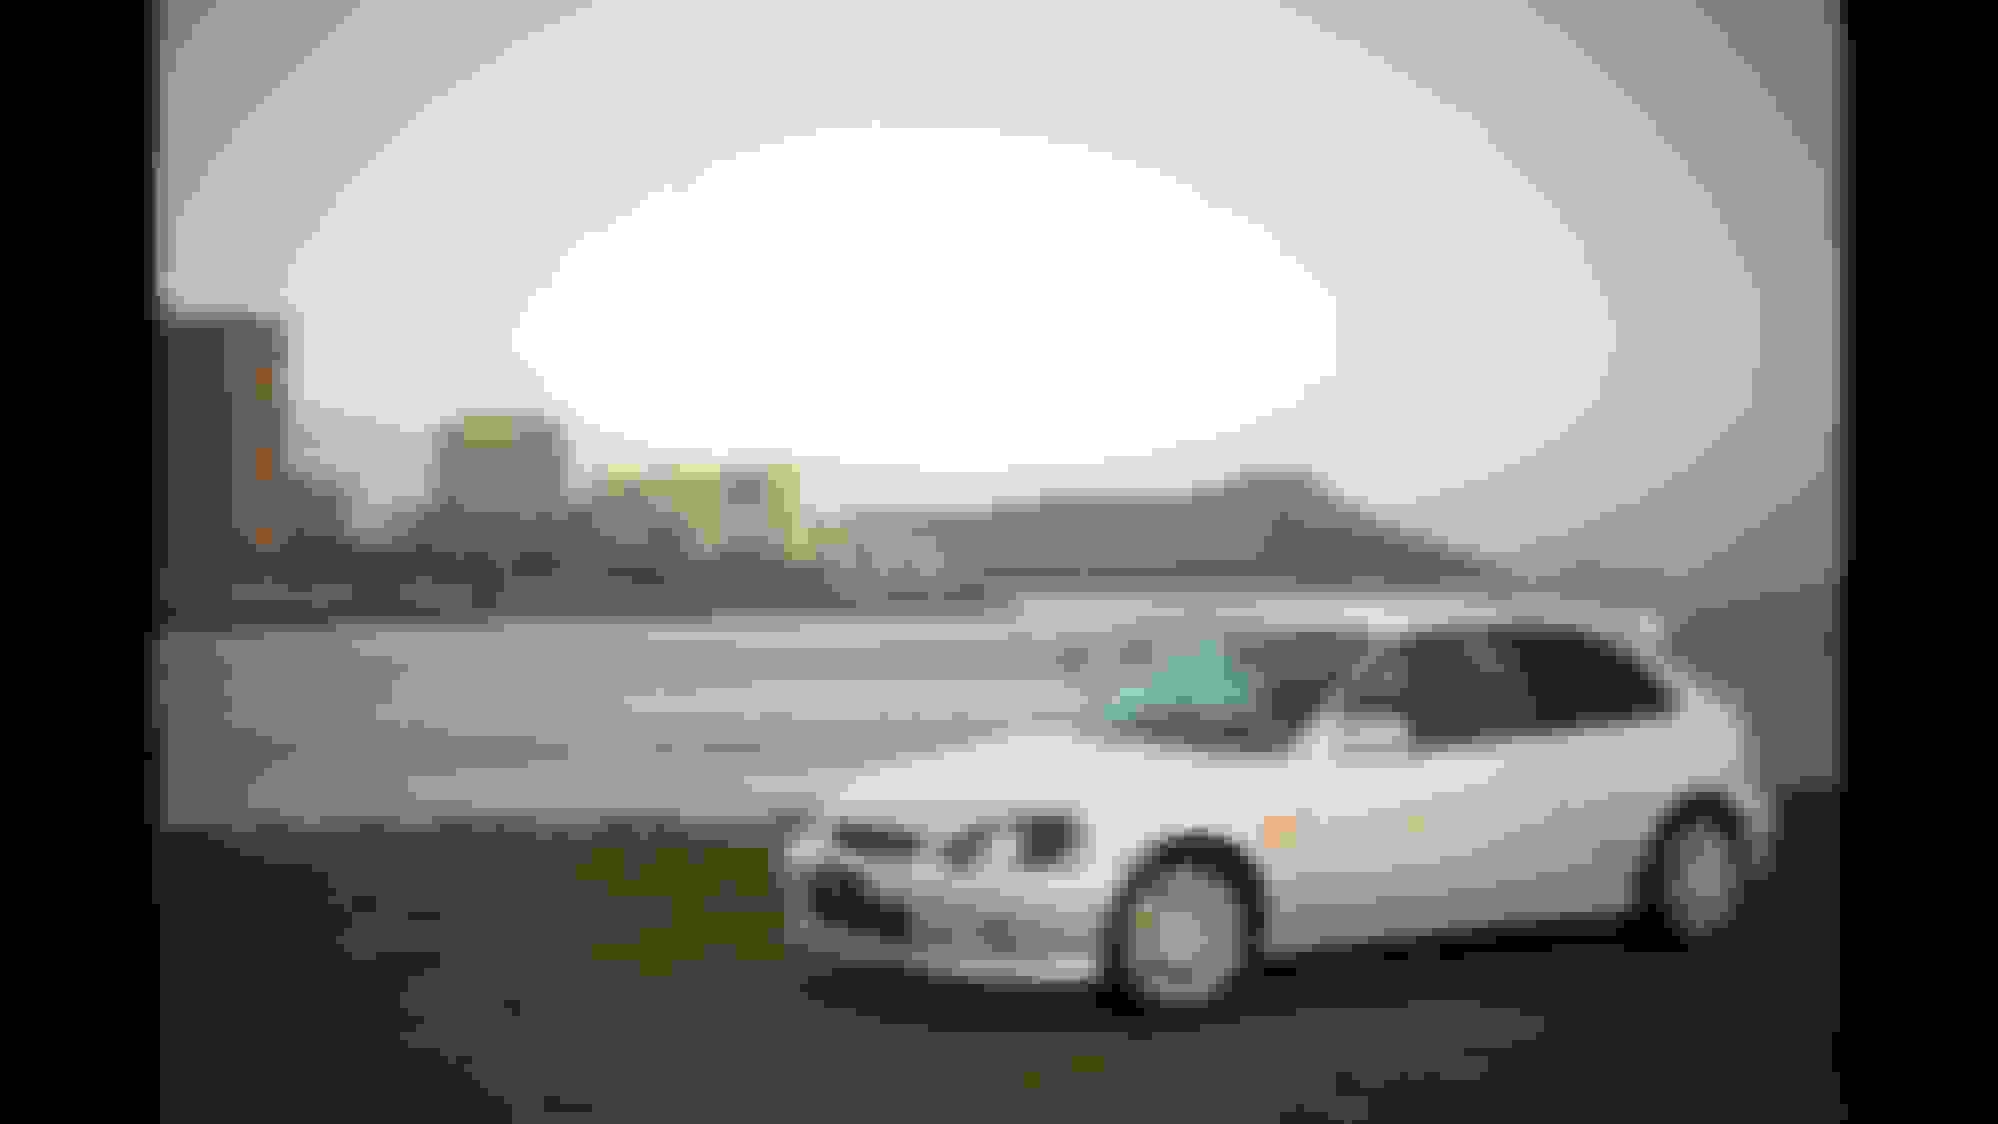 Gran Turismo 7 - BMW M4 2014 - Gameplay (PS5 UHD) [4K60FPS] 